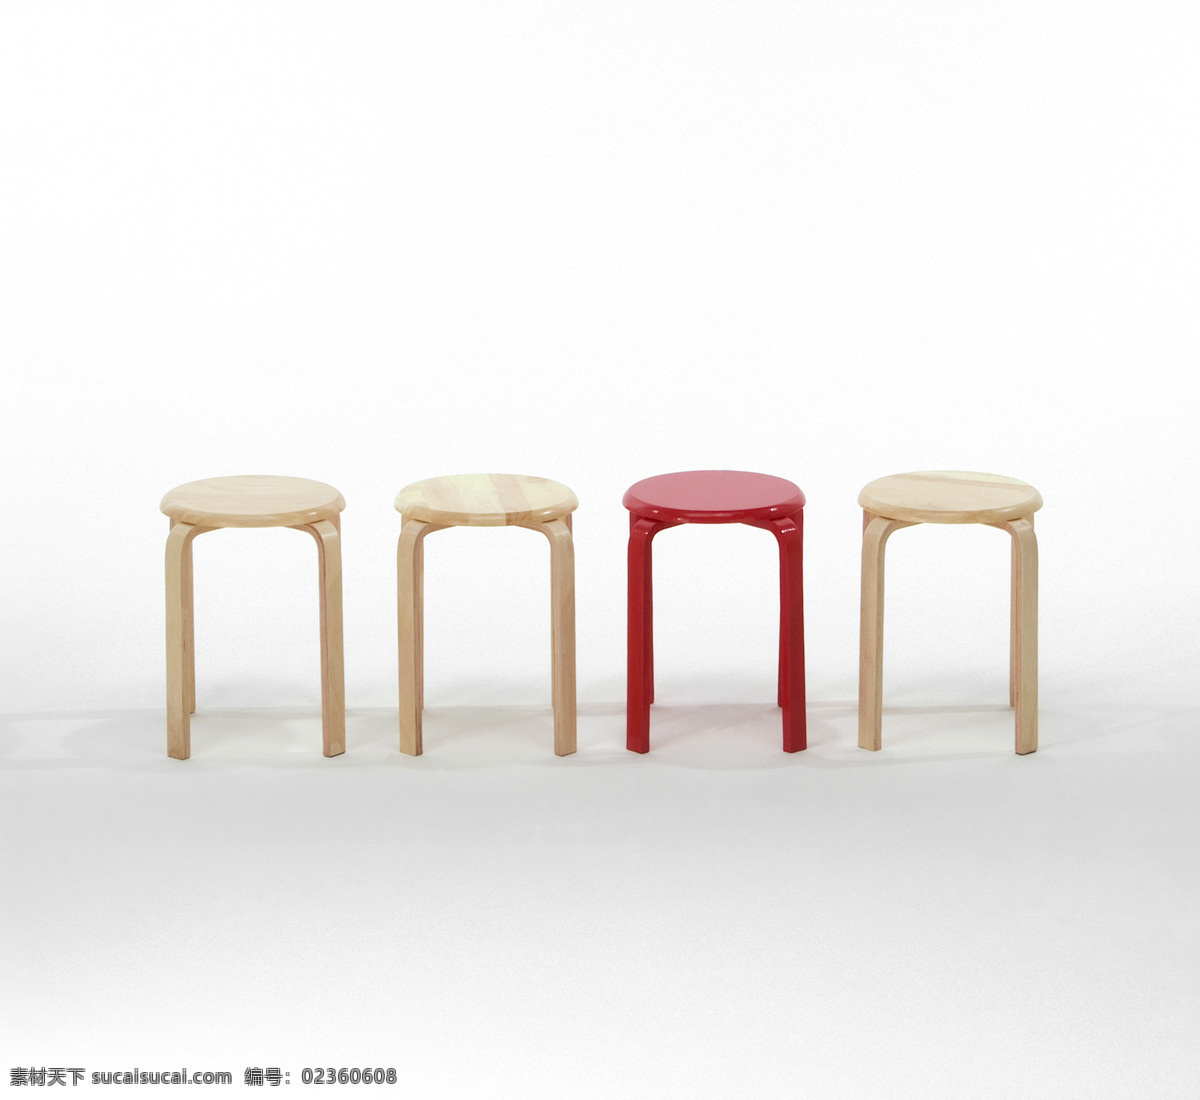 椅子 圆椅子 凳子 椅子排列 红色椅子 原木椅子 实木椅子 木质椅子 时尚椅子 家居文化 时尚家具 简约家具 家居 家居生活 生活百科